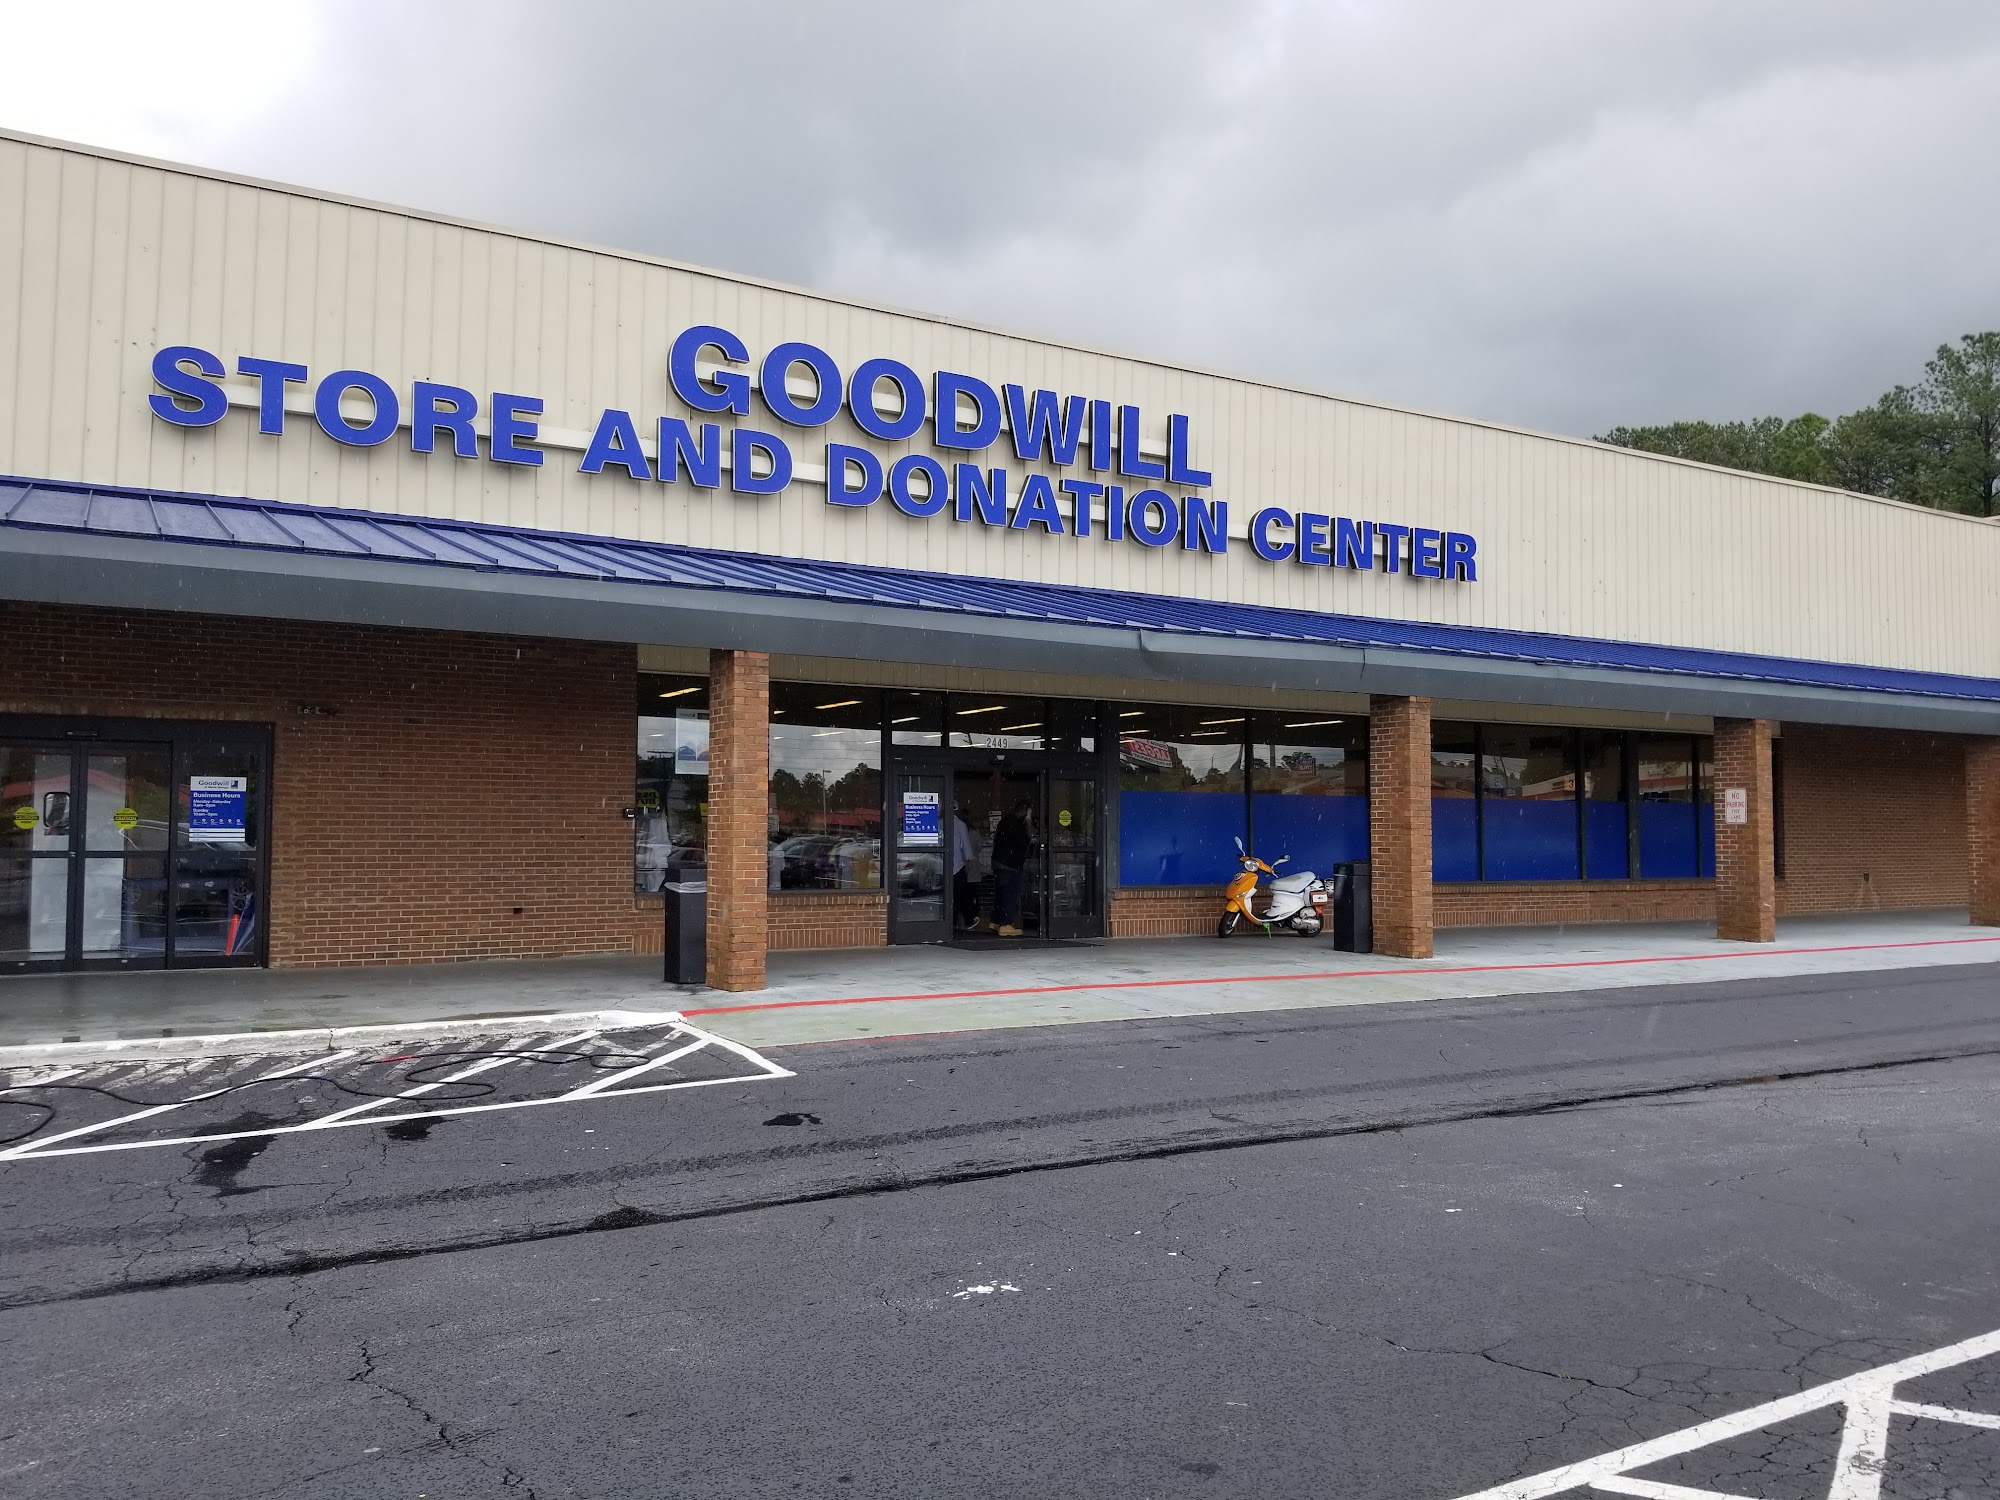 Goodwill Thrift Store & Donation Center